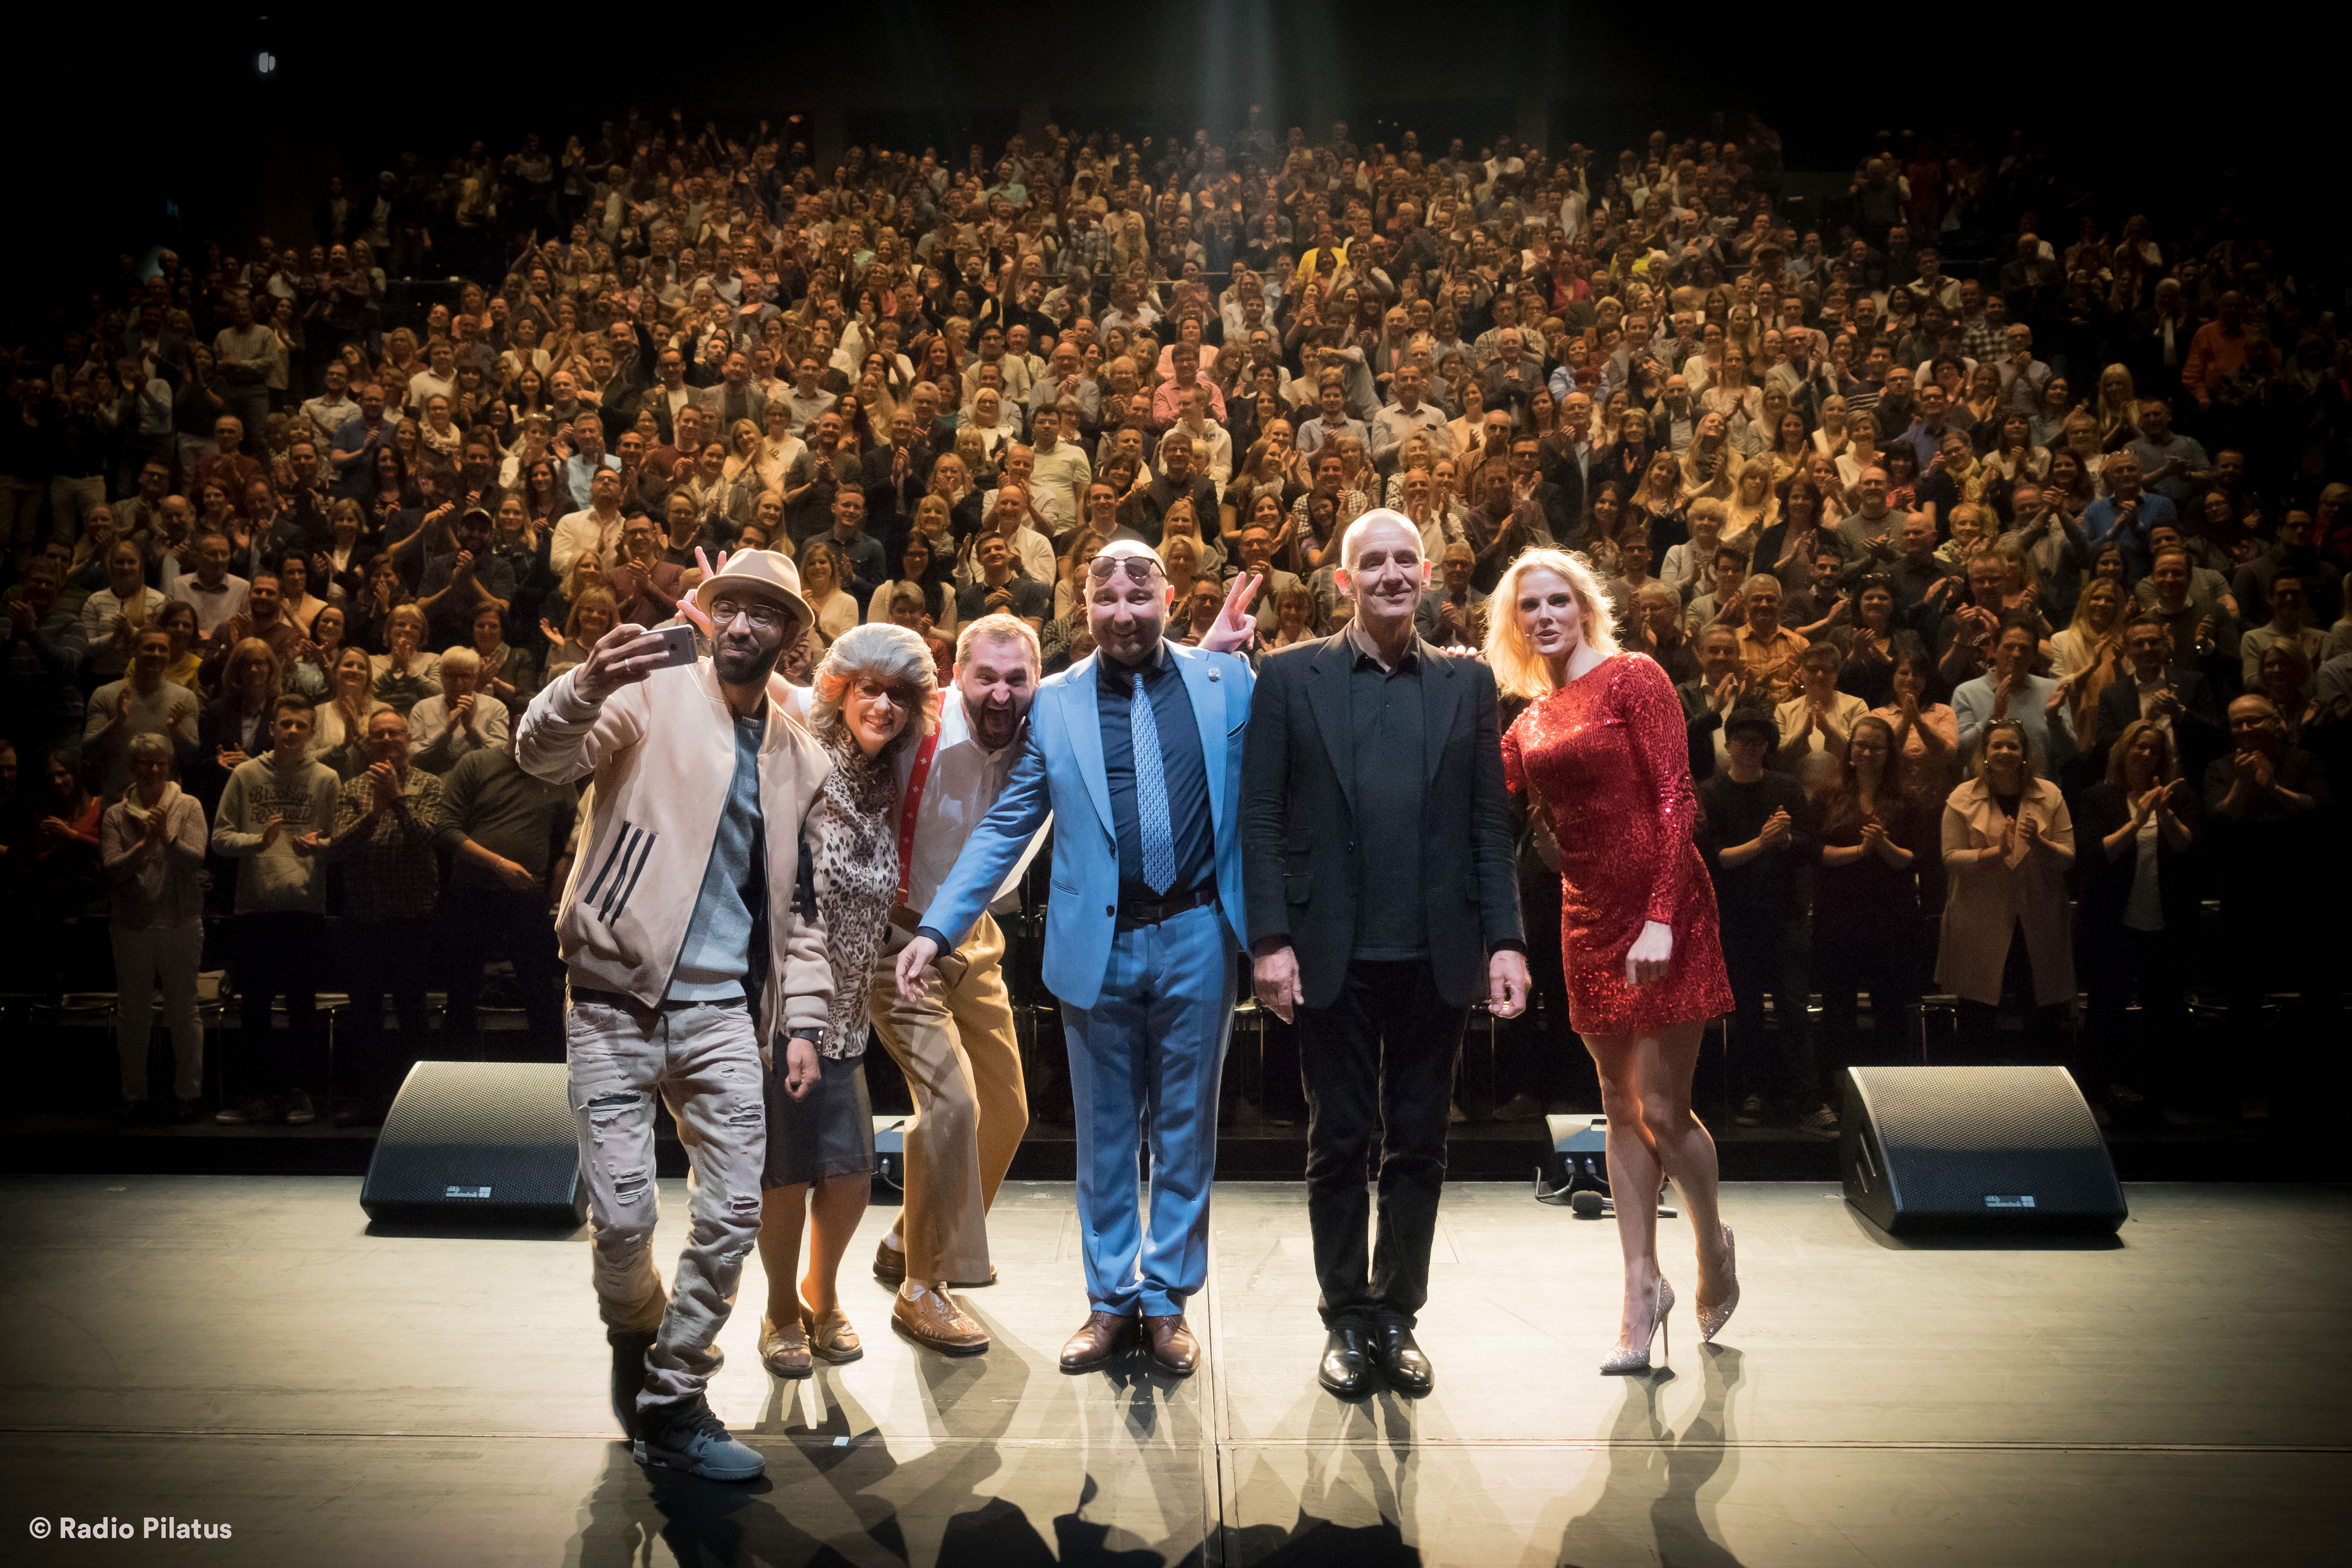 Gruppenbild der Performer:innen der Radio Pilatus Comedy Night im Luzerner Saal des KKL Luzern